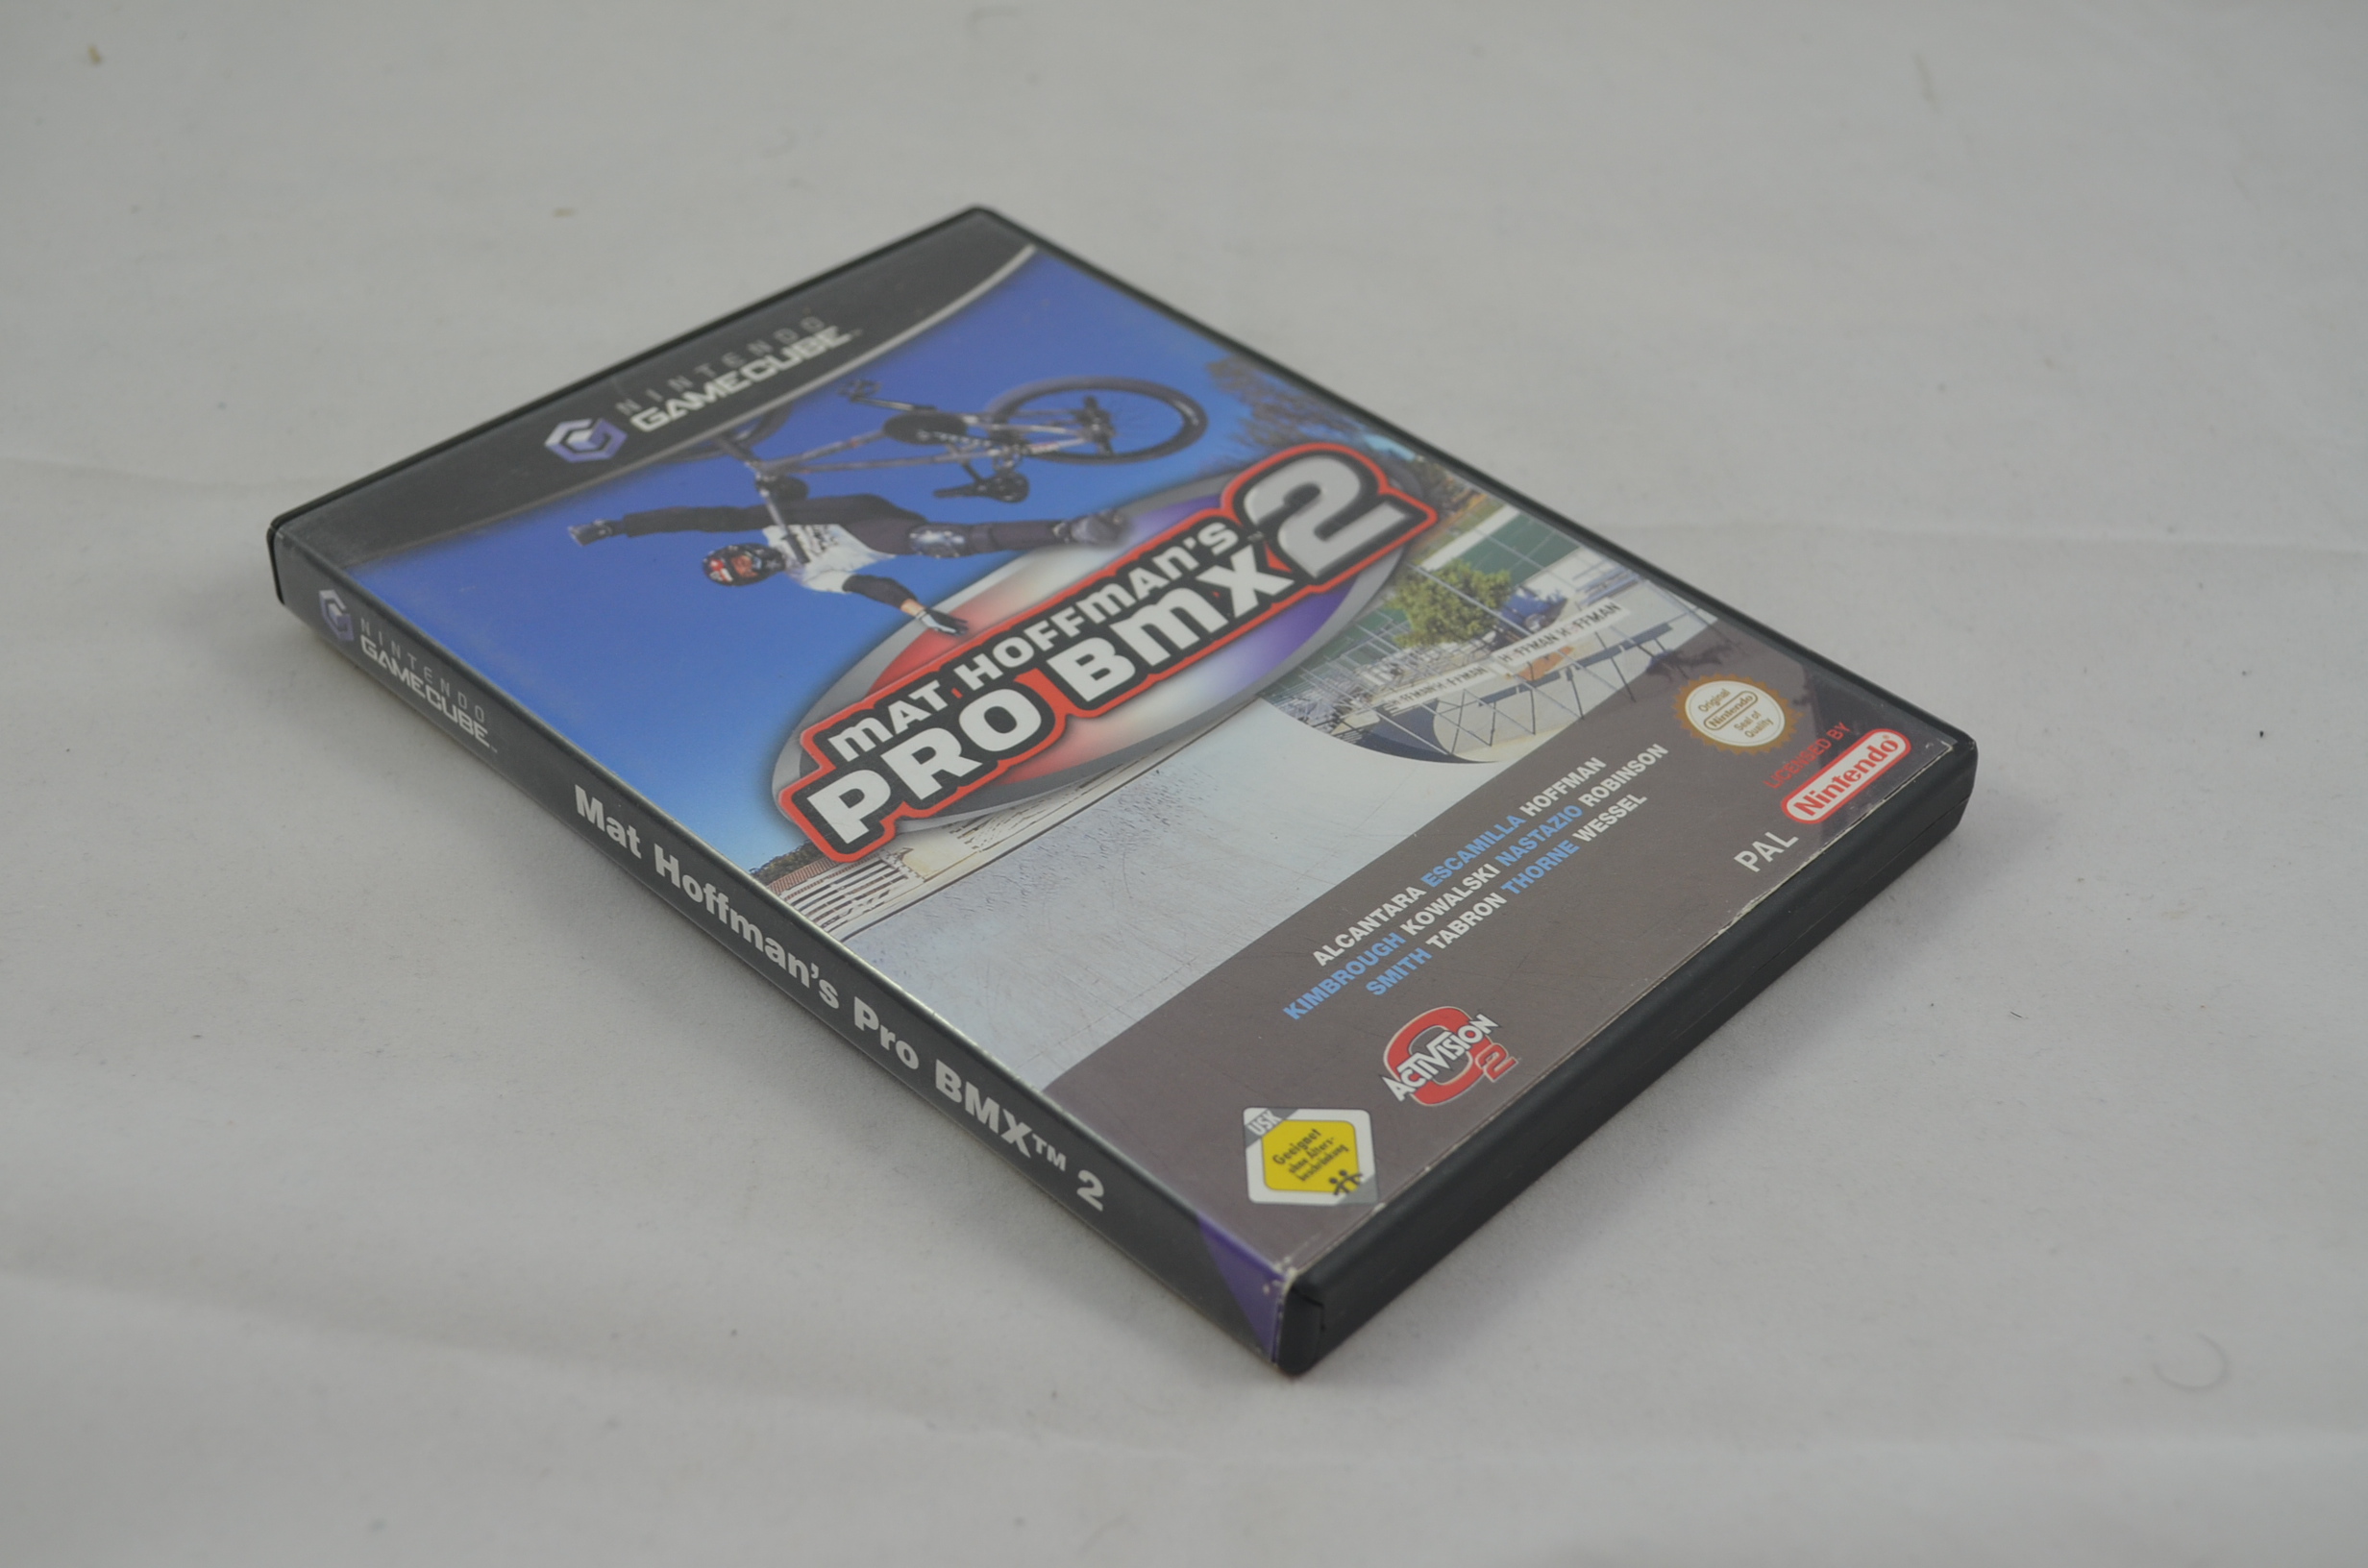 Produktbild von Mat Hoffman's Pro BMX 2 GameCube Spiel CB